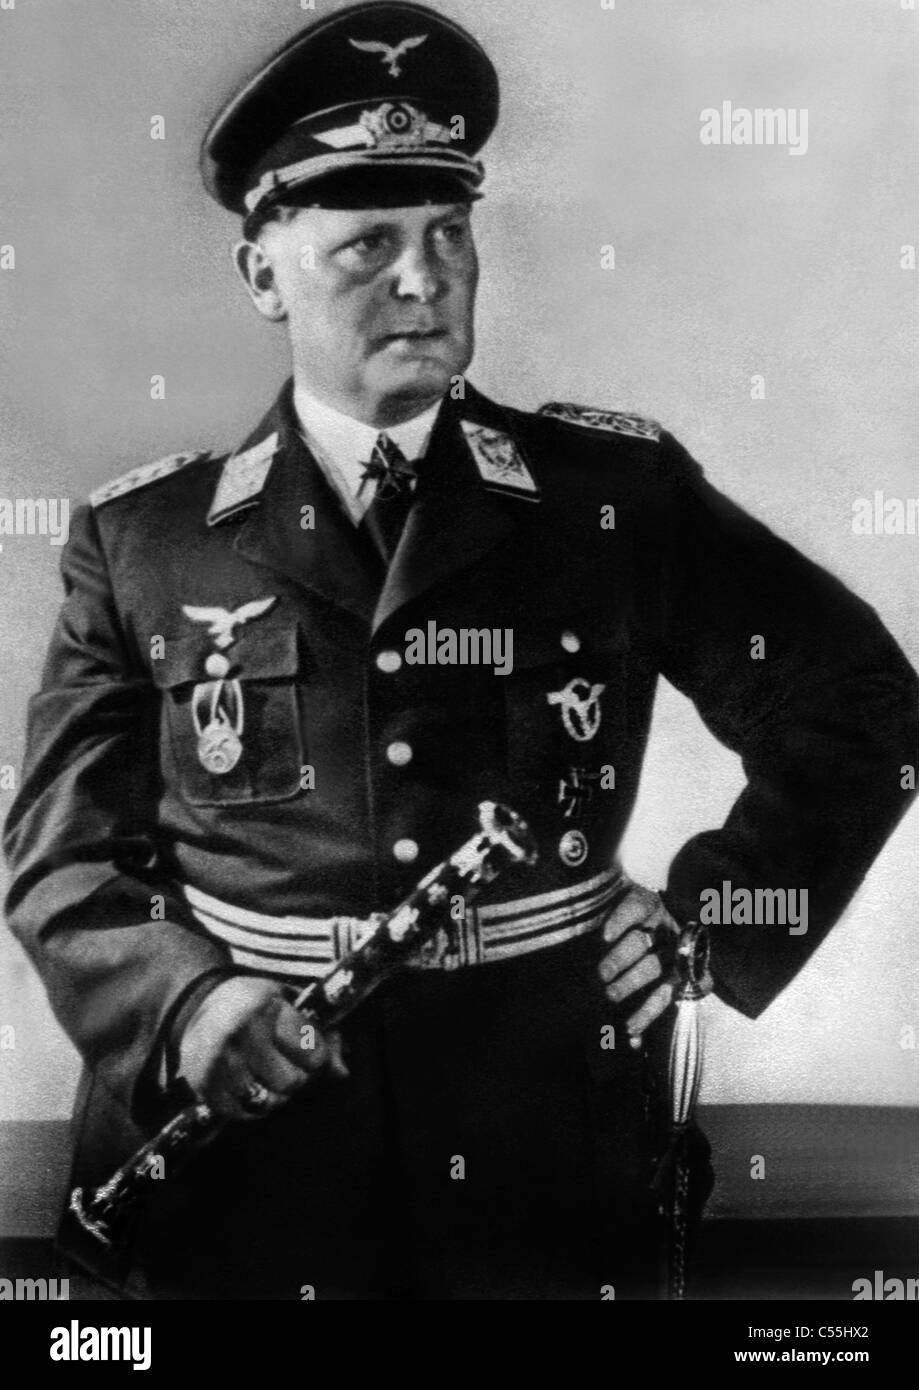 HERMANN GORING SENIOR NAZI OFFICER 01 May 1940 Stock Photo